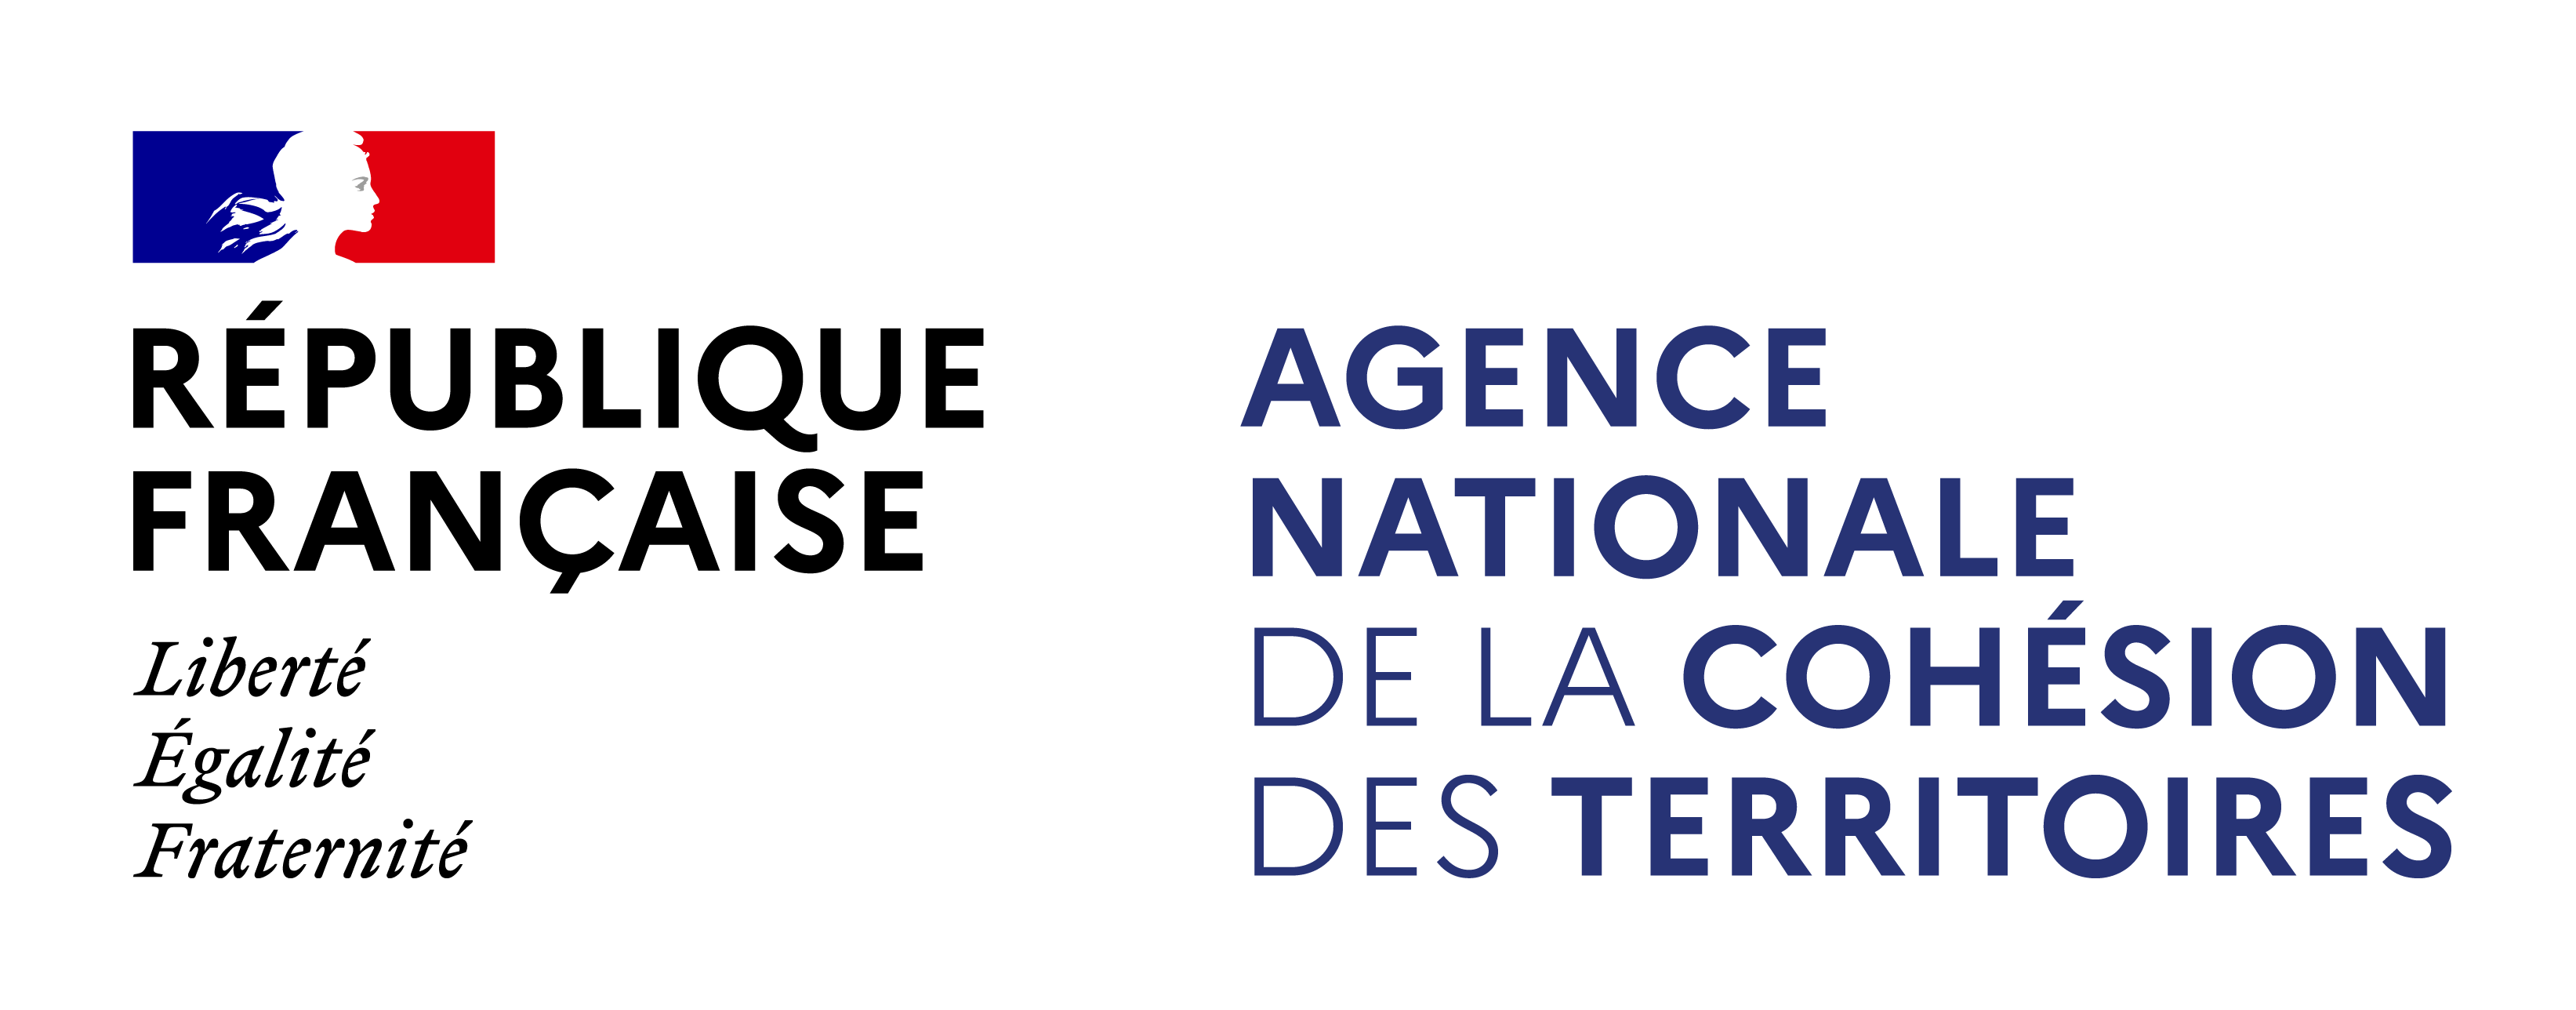 Agence nationale de la Cohésion des Territoires (nouvelle fenêtre)